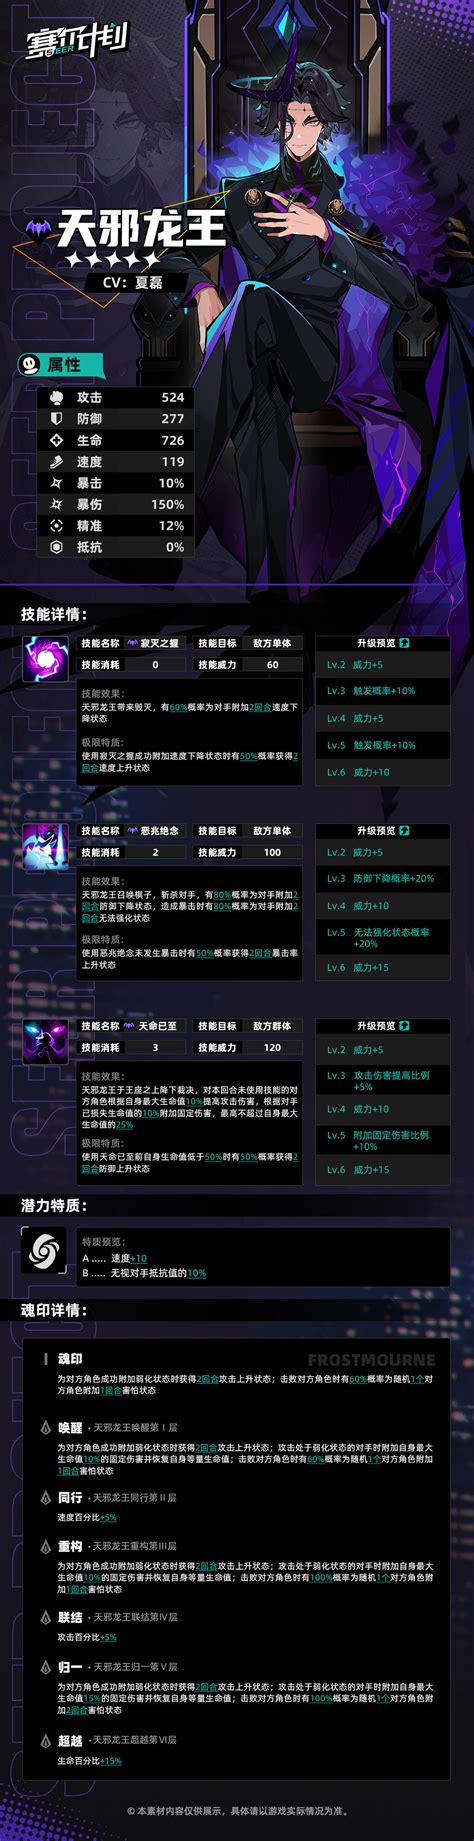 《赛尔计划》【角色信息】-天邪龙王-赛尔计划游戏-光环助手网页版